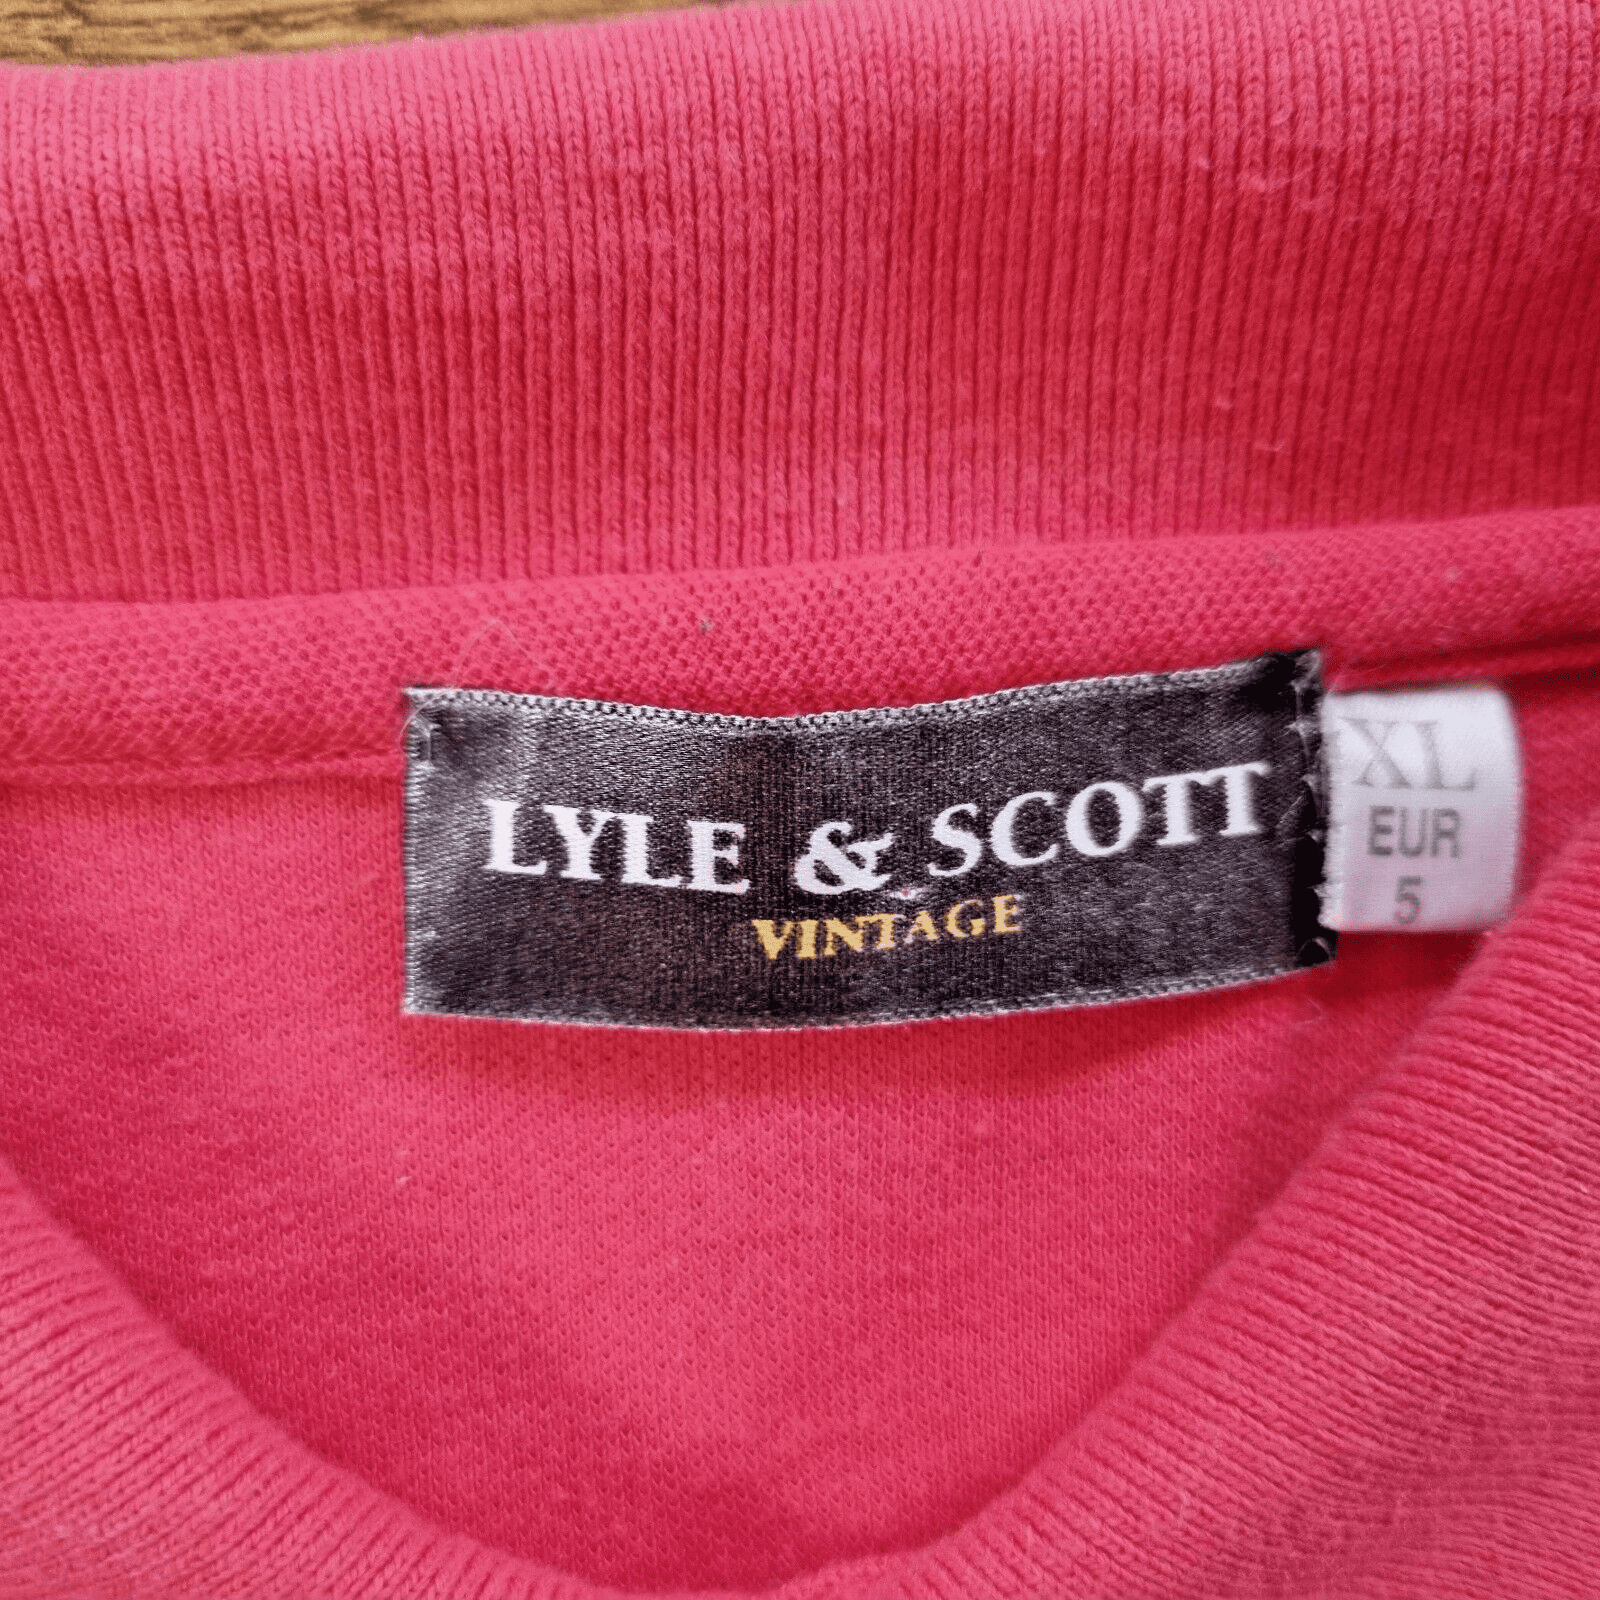 LYLE & SCOTT Vintage Men's Polo T-shirt Short Sleeve Top in Blue Size XL Euro 5 - Bonnie Lassio